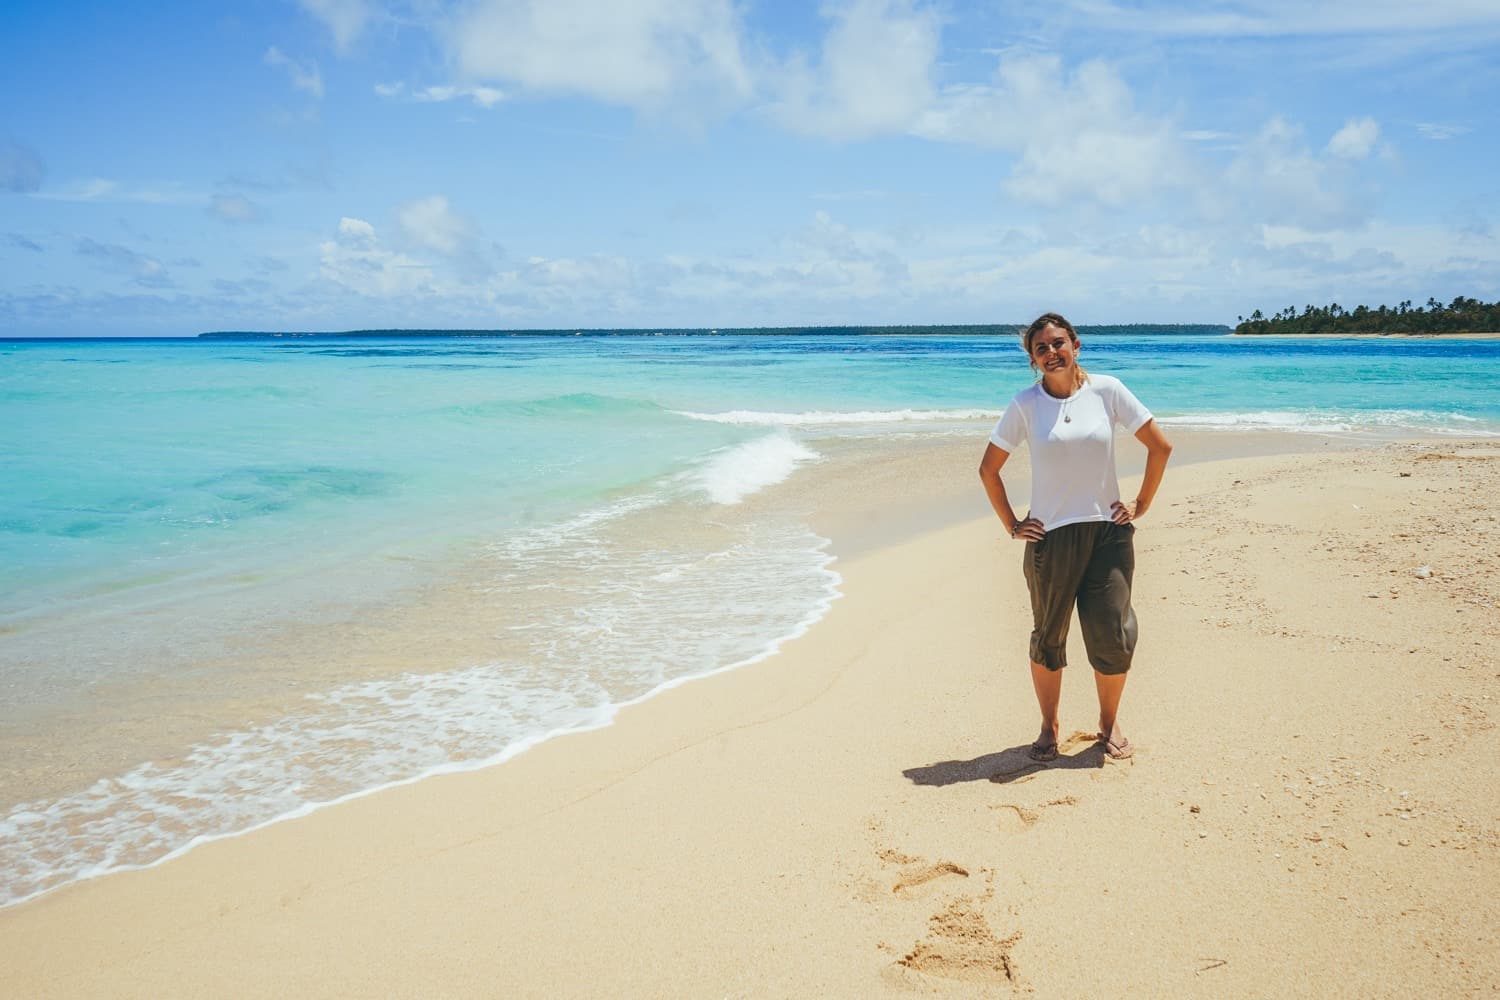 Girl on beach in Tonga